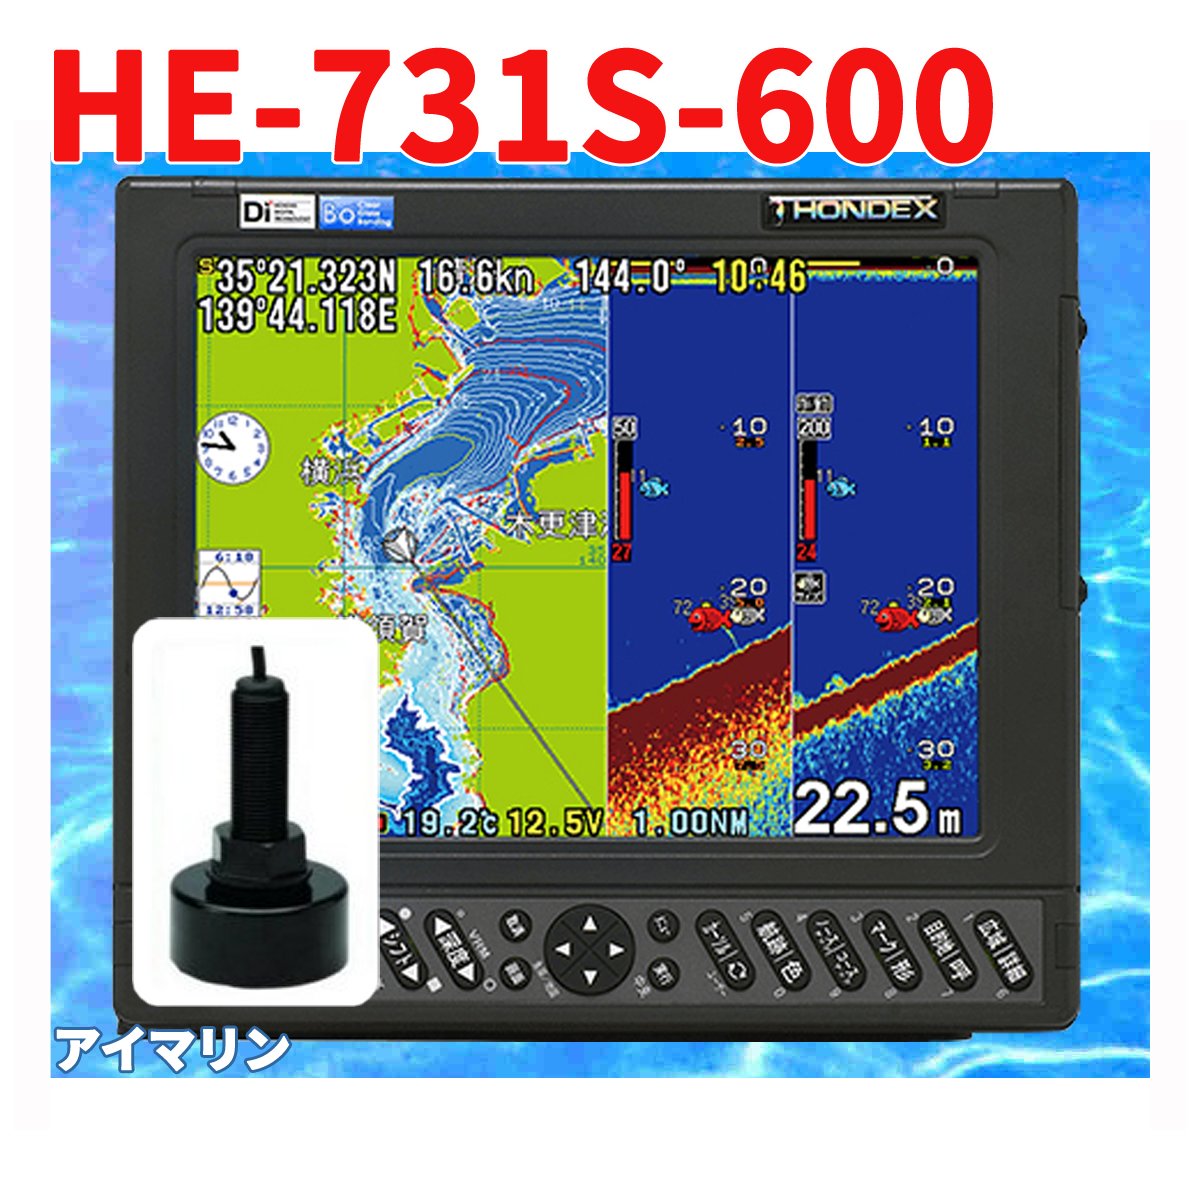 5/20 在庫あり 魚群探知機 HONDEX HE-731S 600w TD28 振動子付き GPS 魚探 アンテナ内蔵 ホンデックス 1